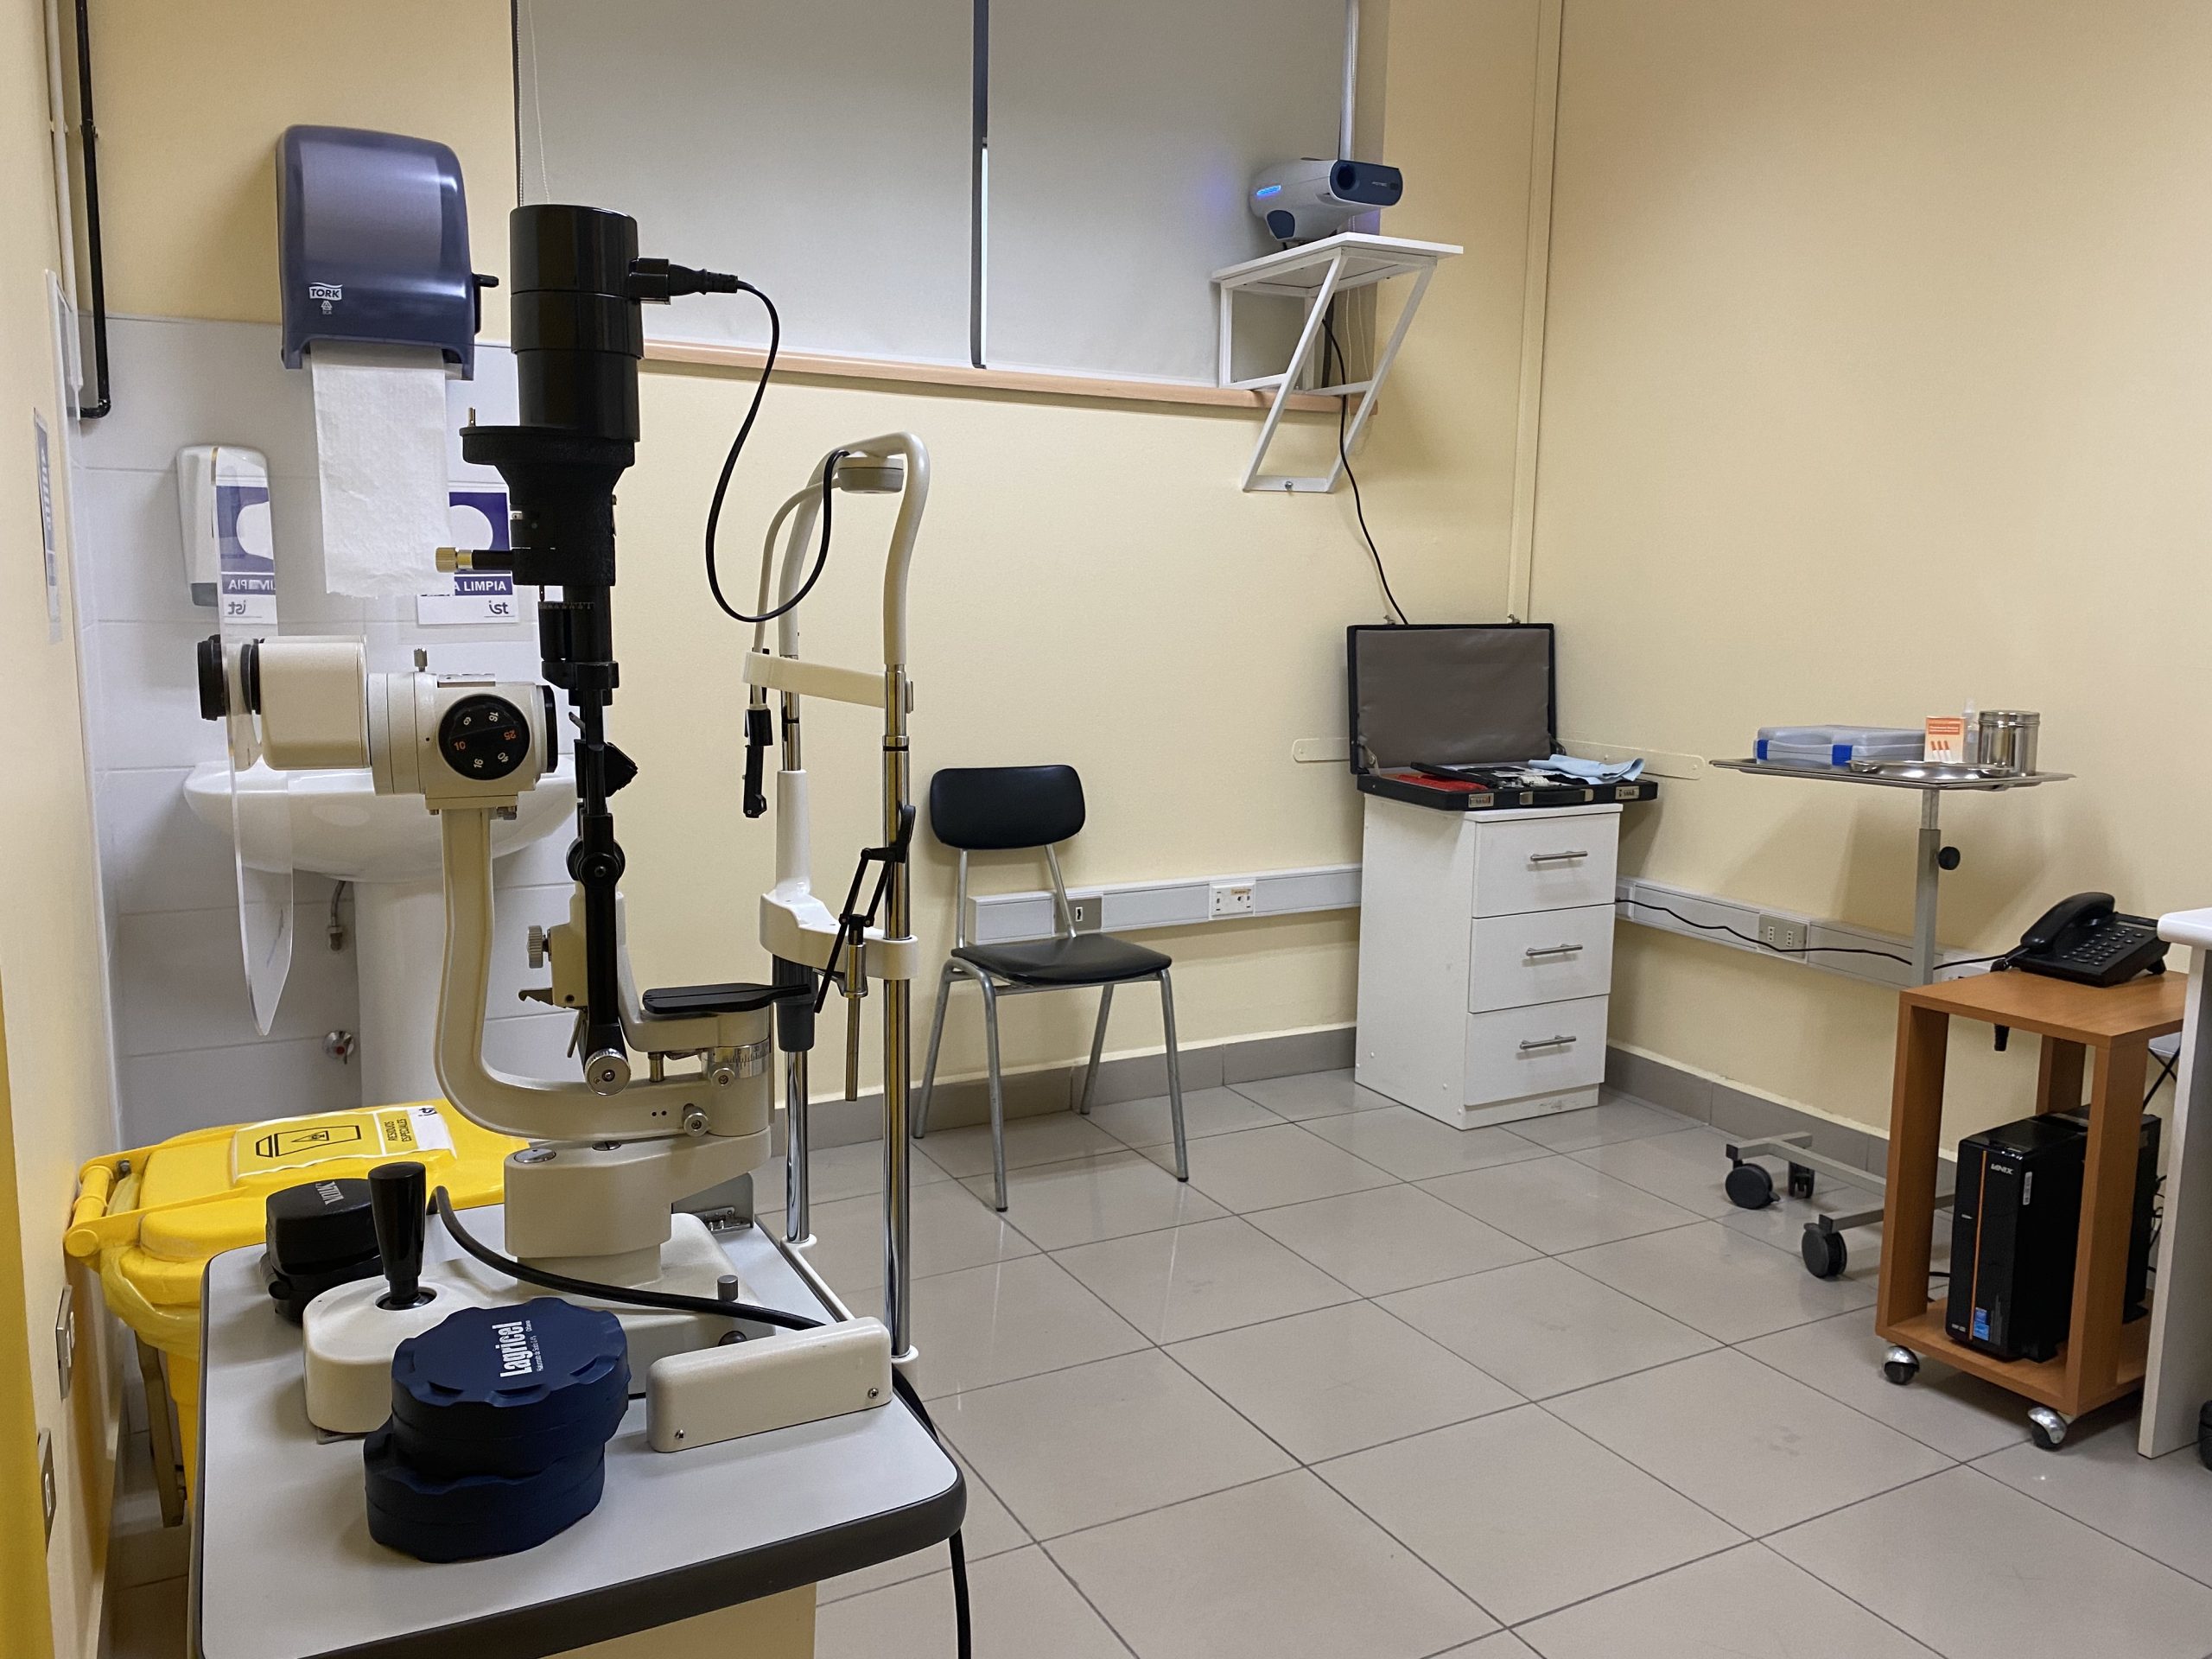 LOS ANDES: Unidad oftalmológica de Cesfam Centenario abre a la comunidad sus mejoradas dependencias